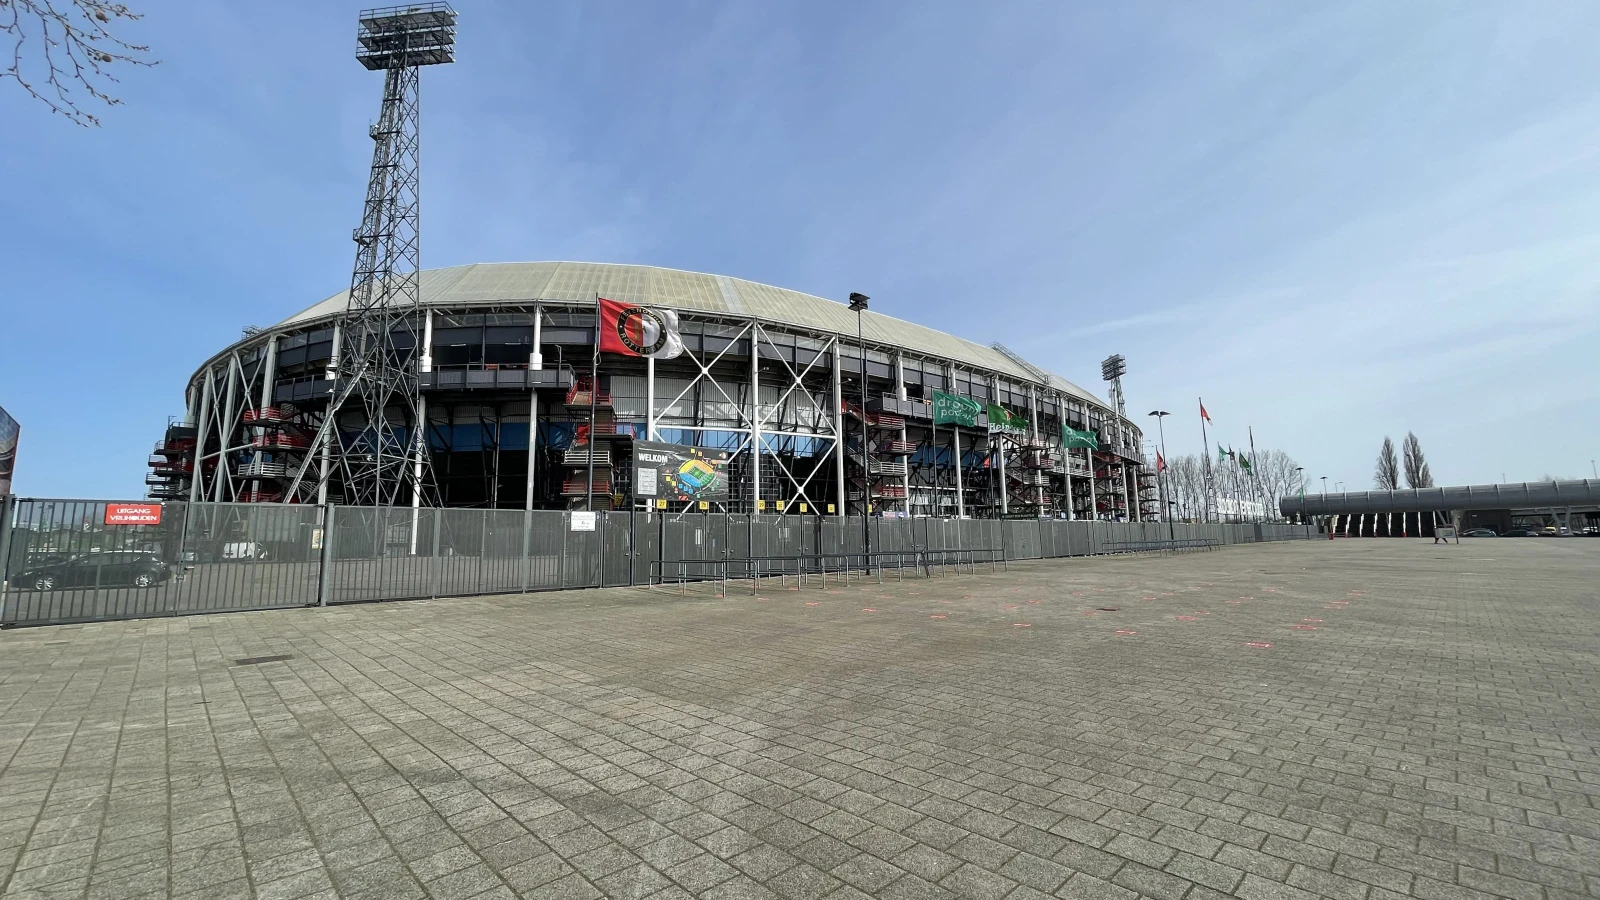 Feyenoord belegt trainingskamp in Portugal in aanloop naar de finale van de Conference League